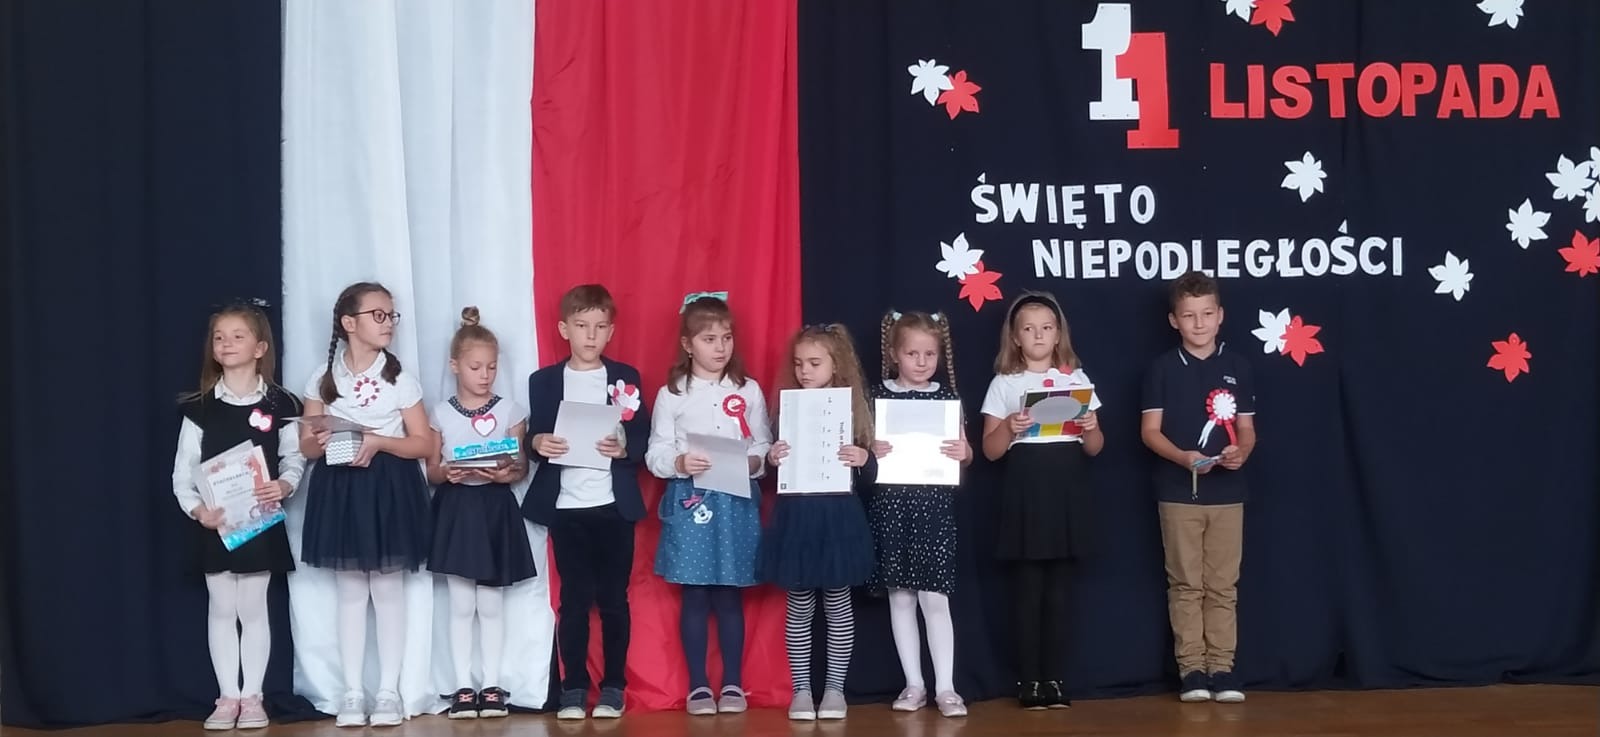 Nagrodzone dzieci stoją z dyplomami na tle dekoracji z okazji Dnia Niepodległości.